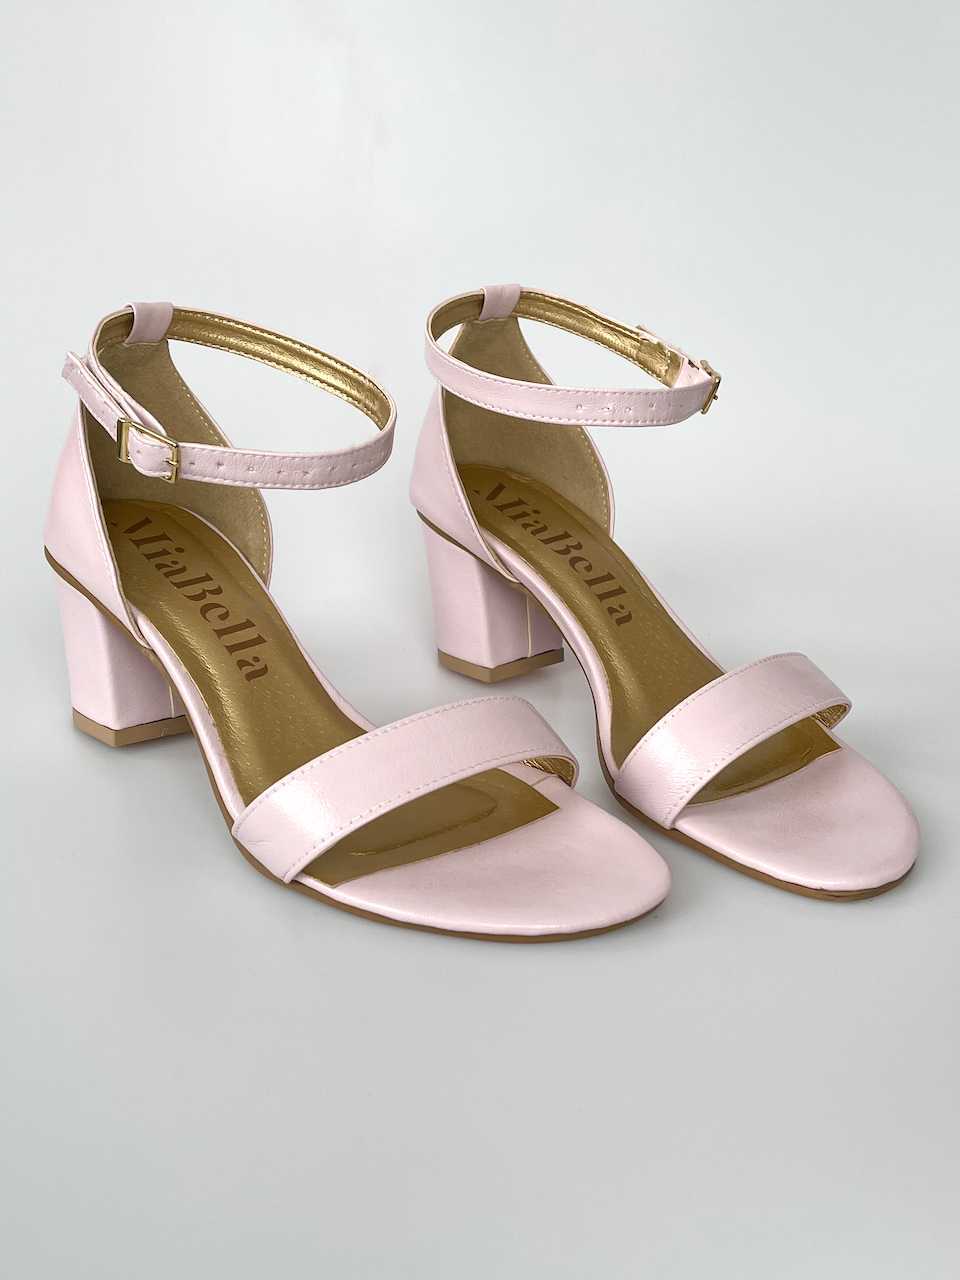 Růžové sandálky na podpatku 34 - stélka 21,5cm / obvod 20,5cm